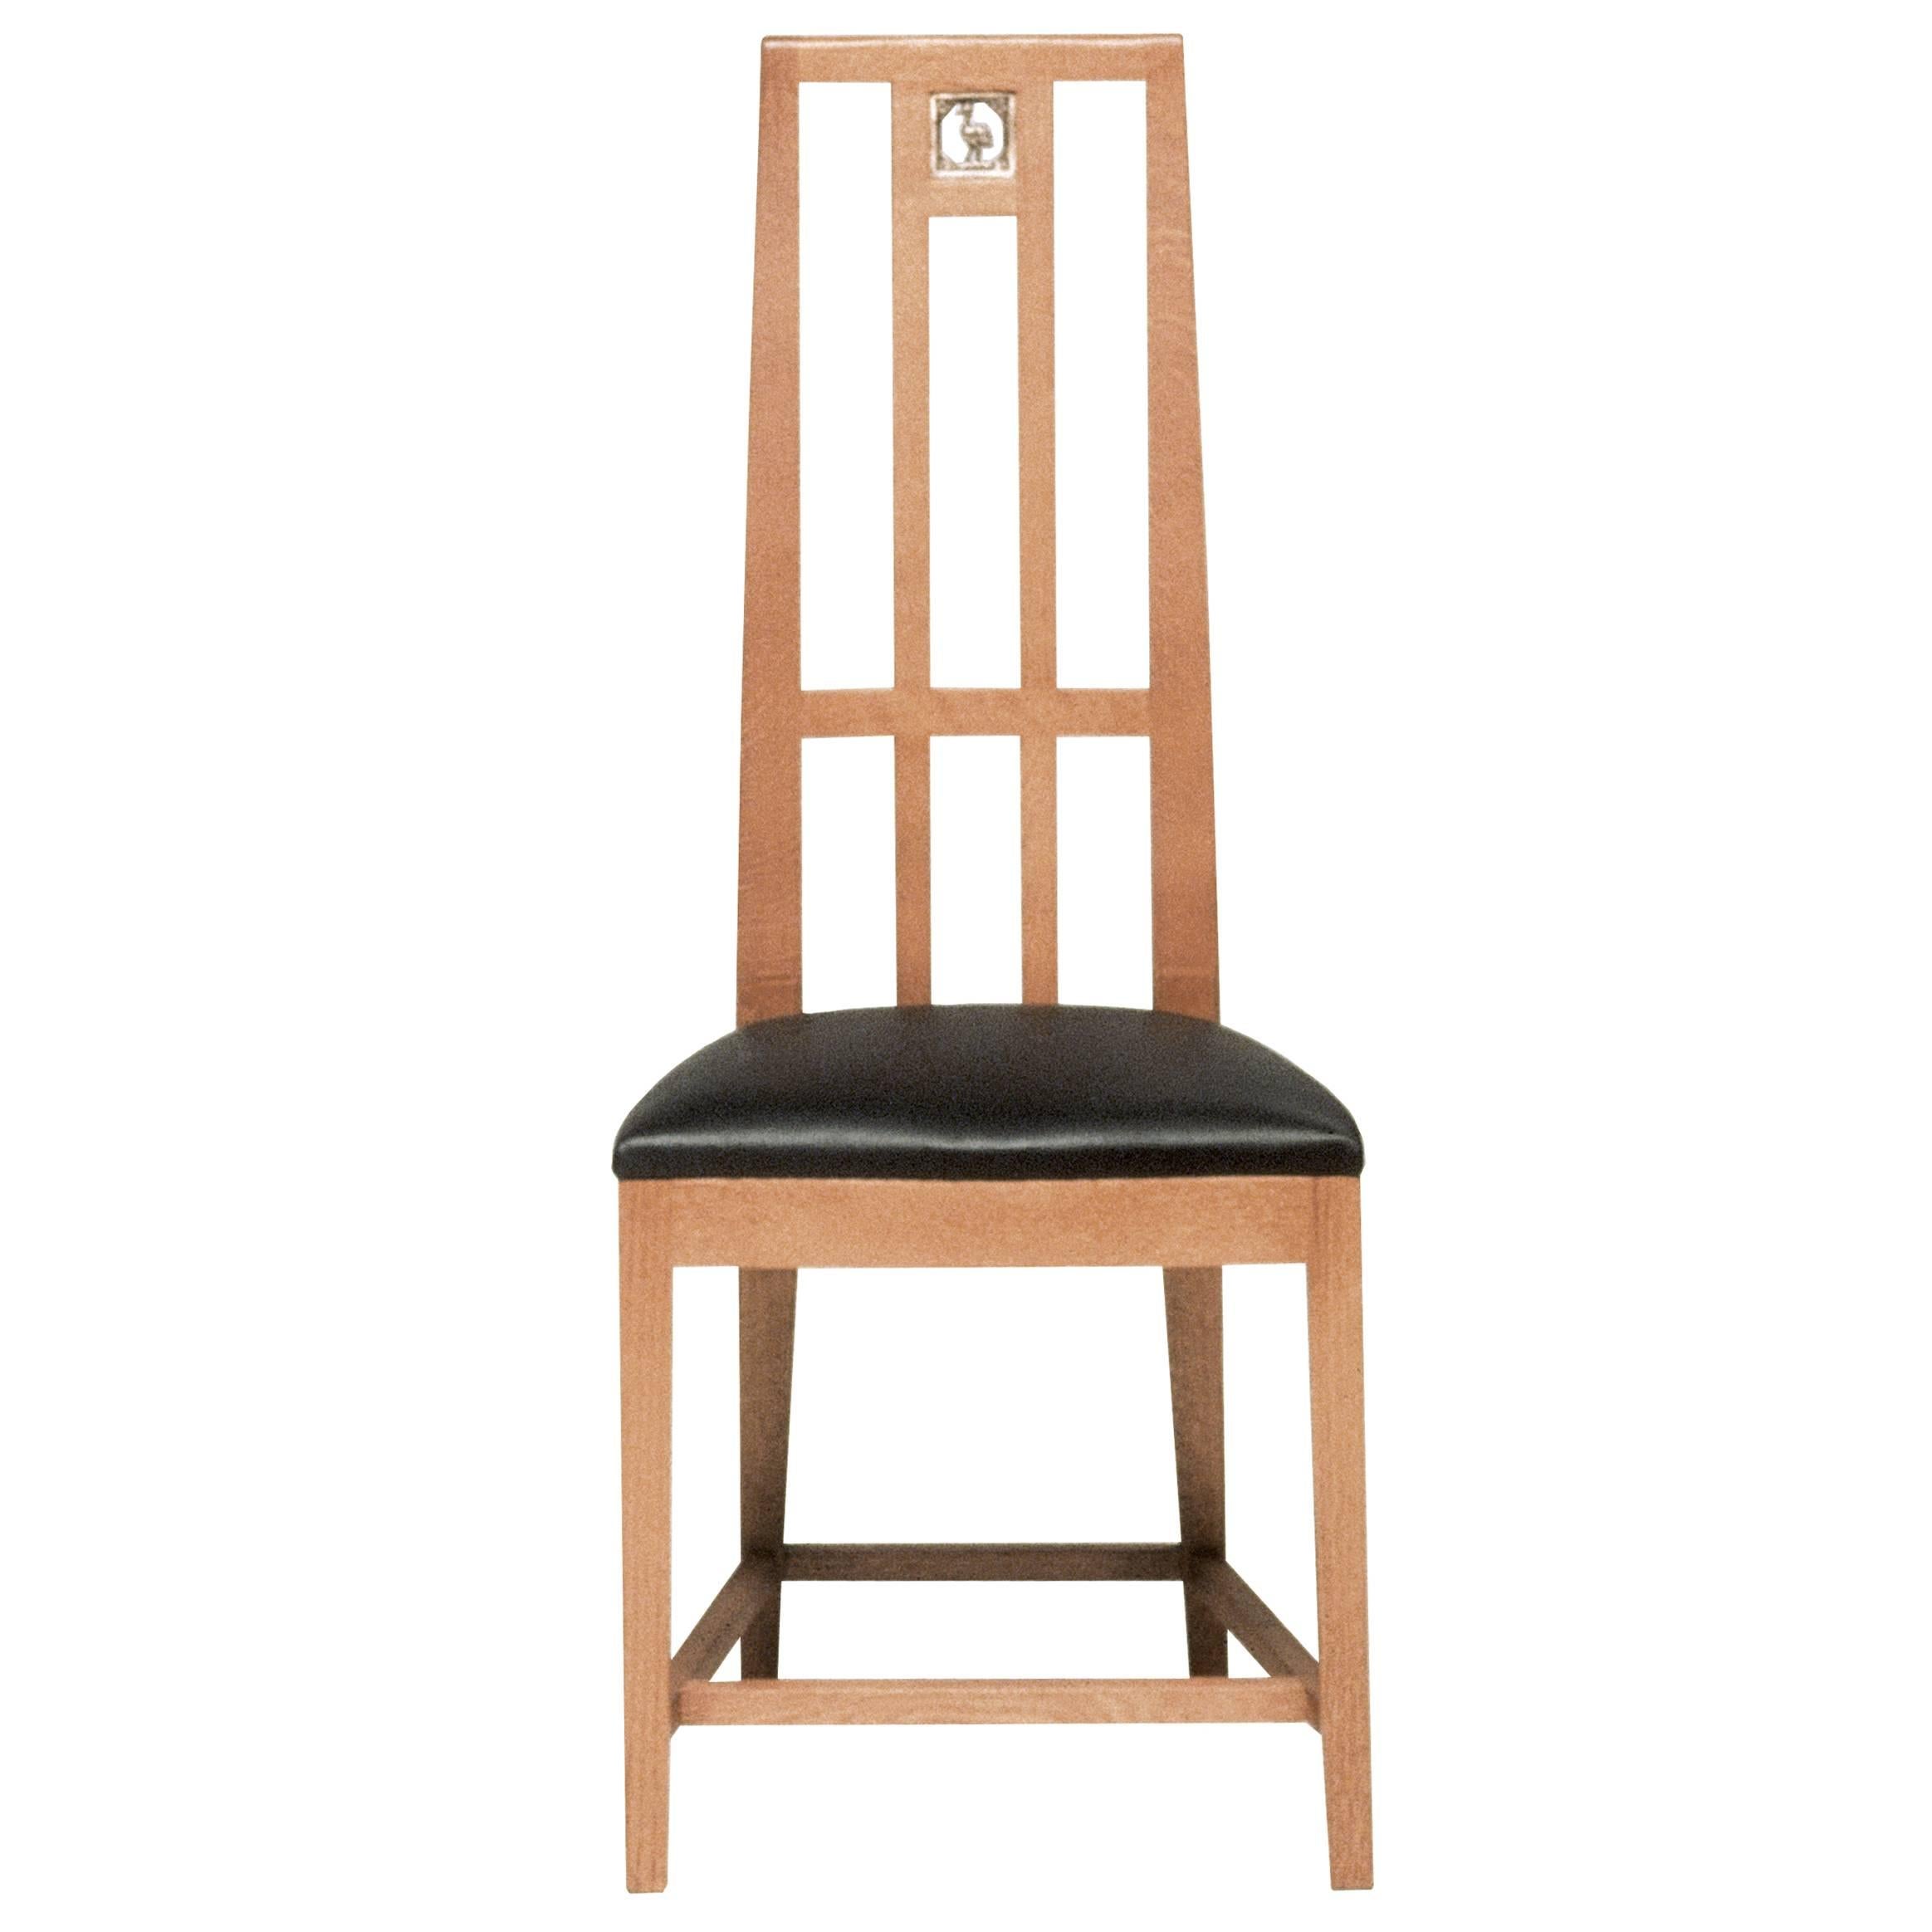 Boyschool Chair, Design by Eliel Saarinen Cranbrook, 1928, Oak - 6 pieces For Sale